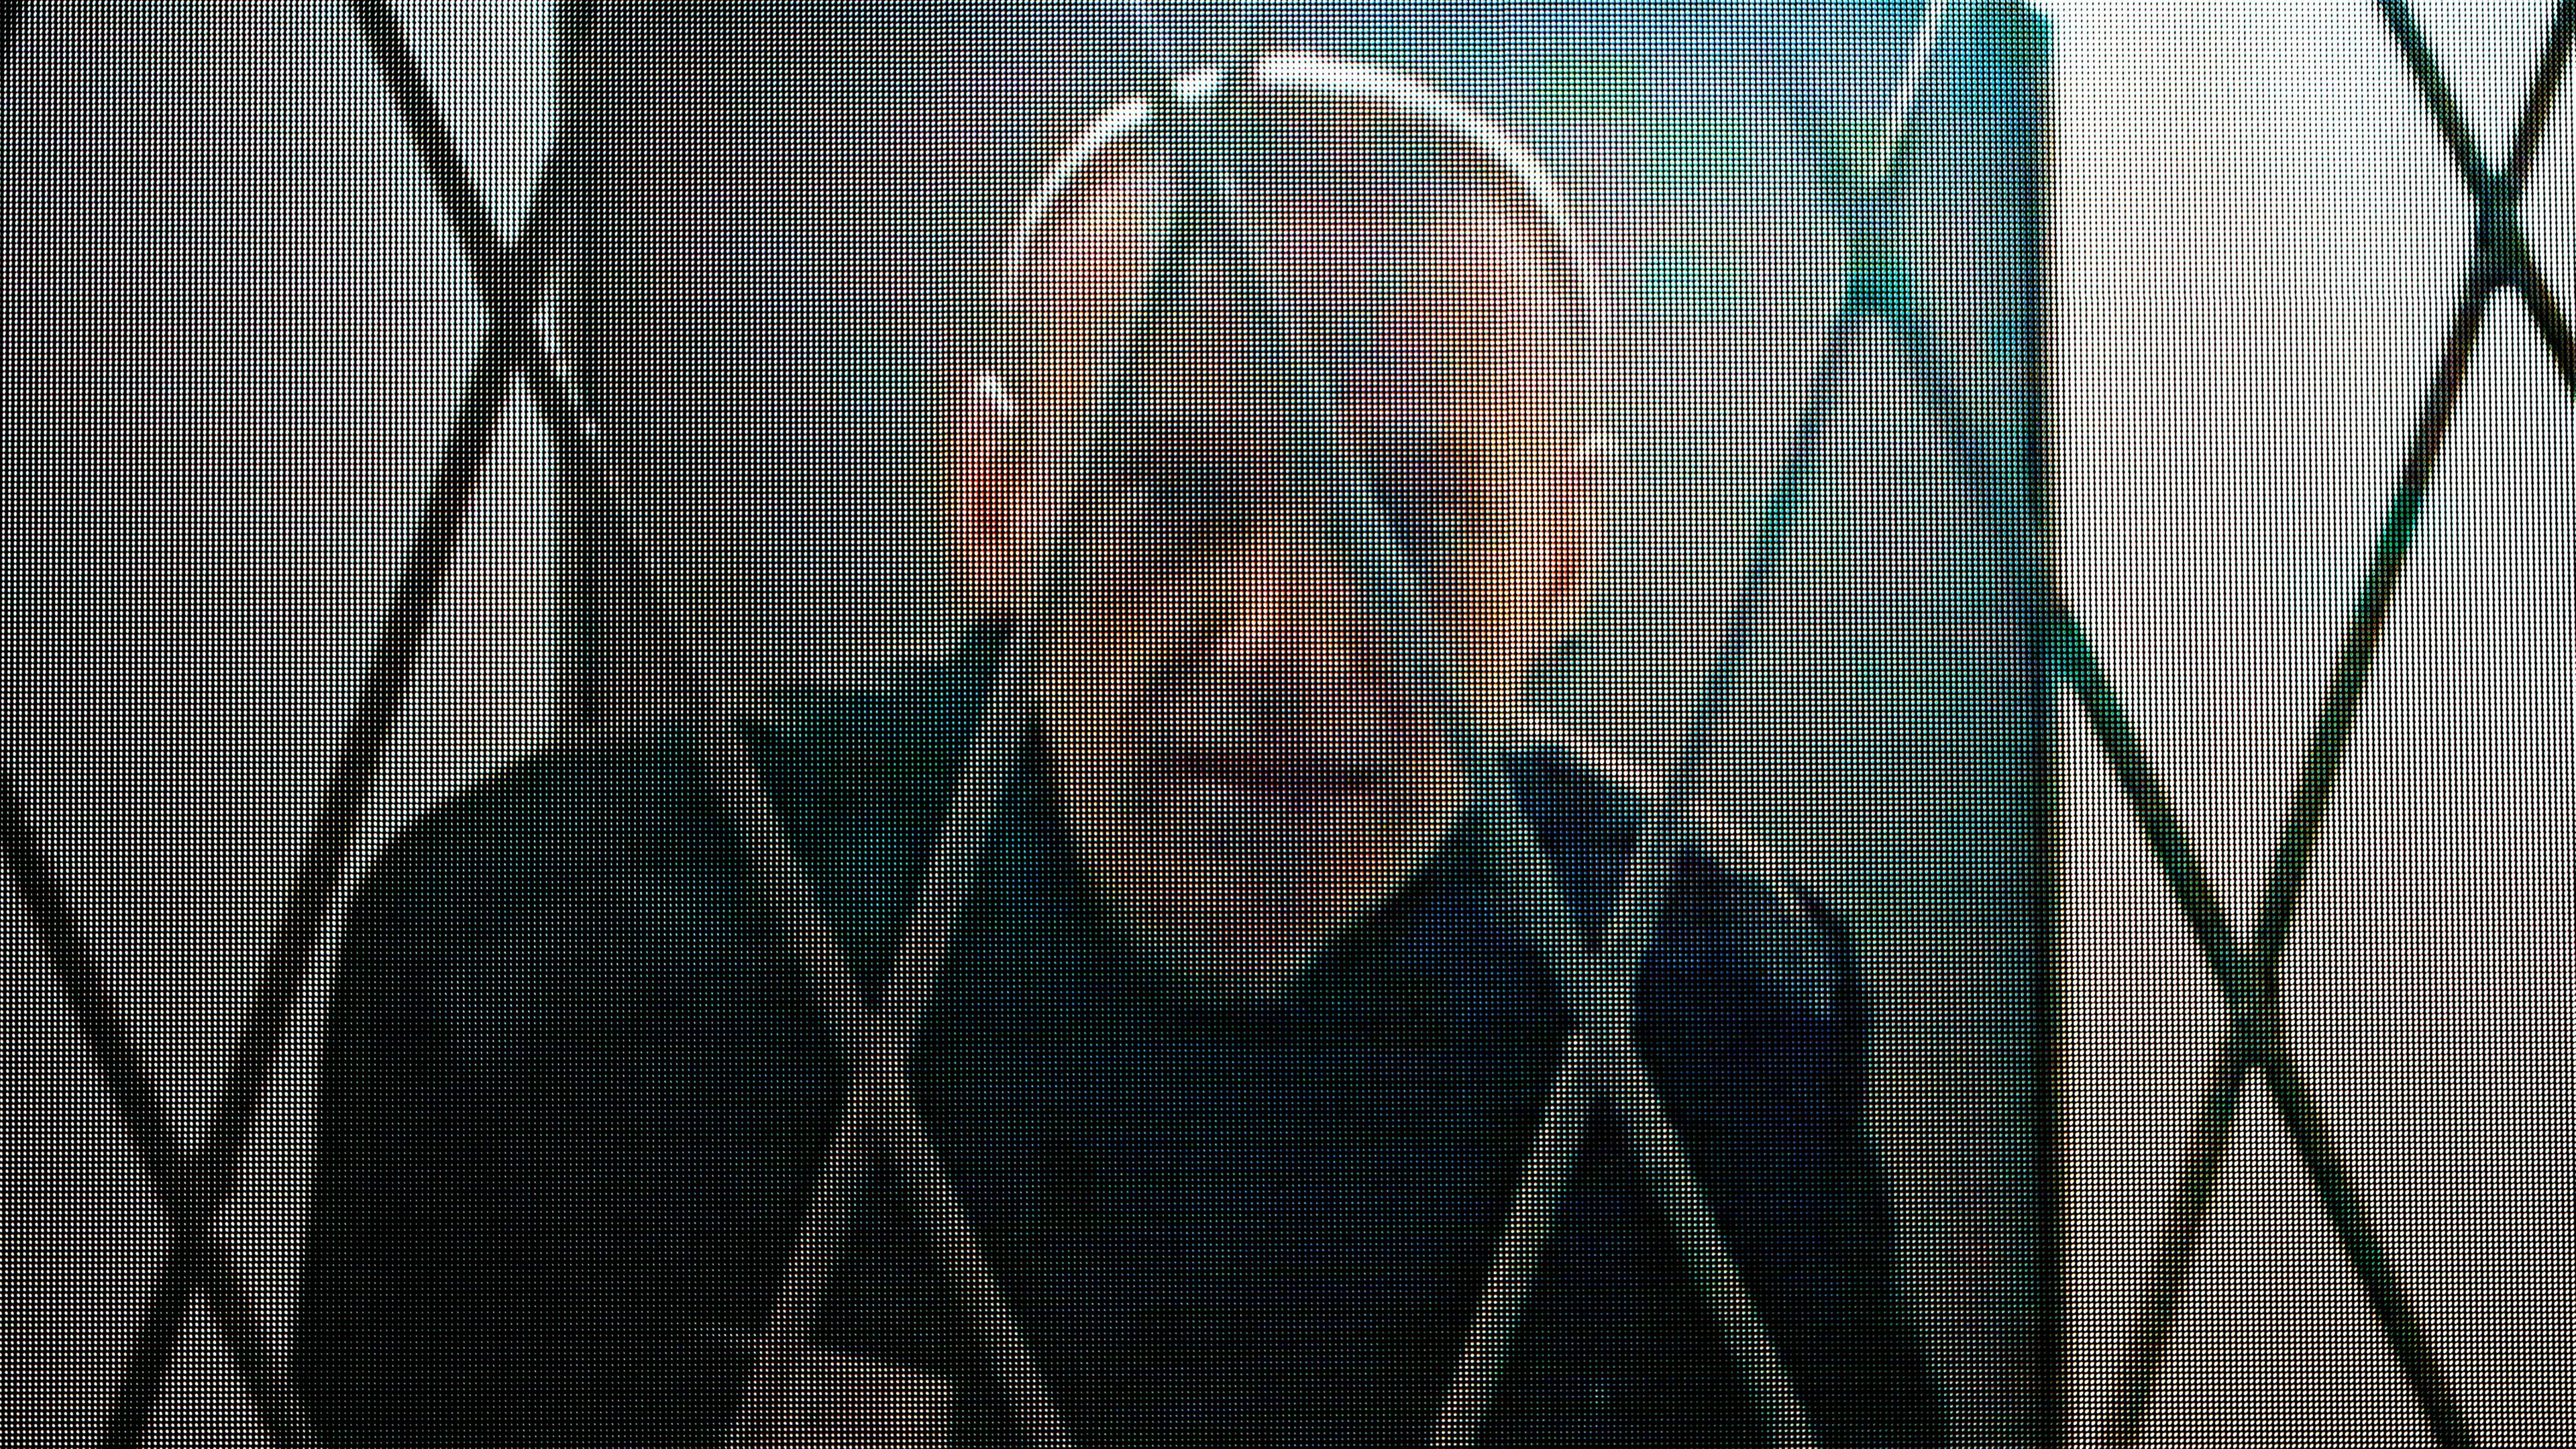 Russland, Moskau: Alexej Nawalny, Oppositionspolitiker aus Russland, ist per Videolink aus der arktischen Strafkolonie zugeschaltet, Archivbild